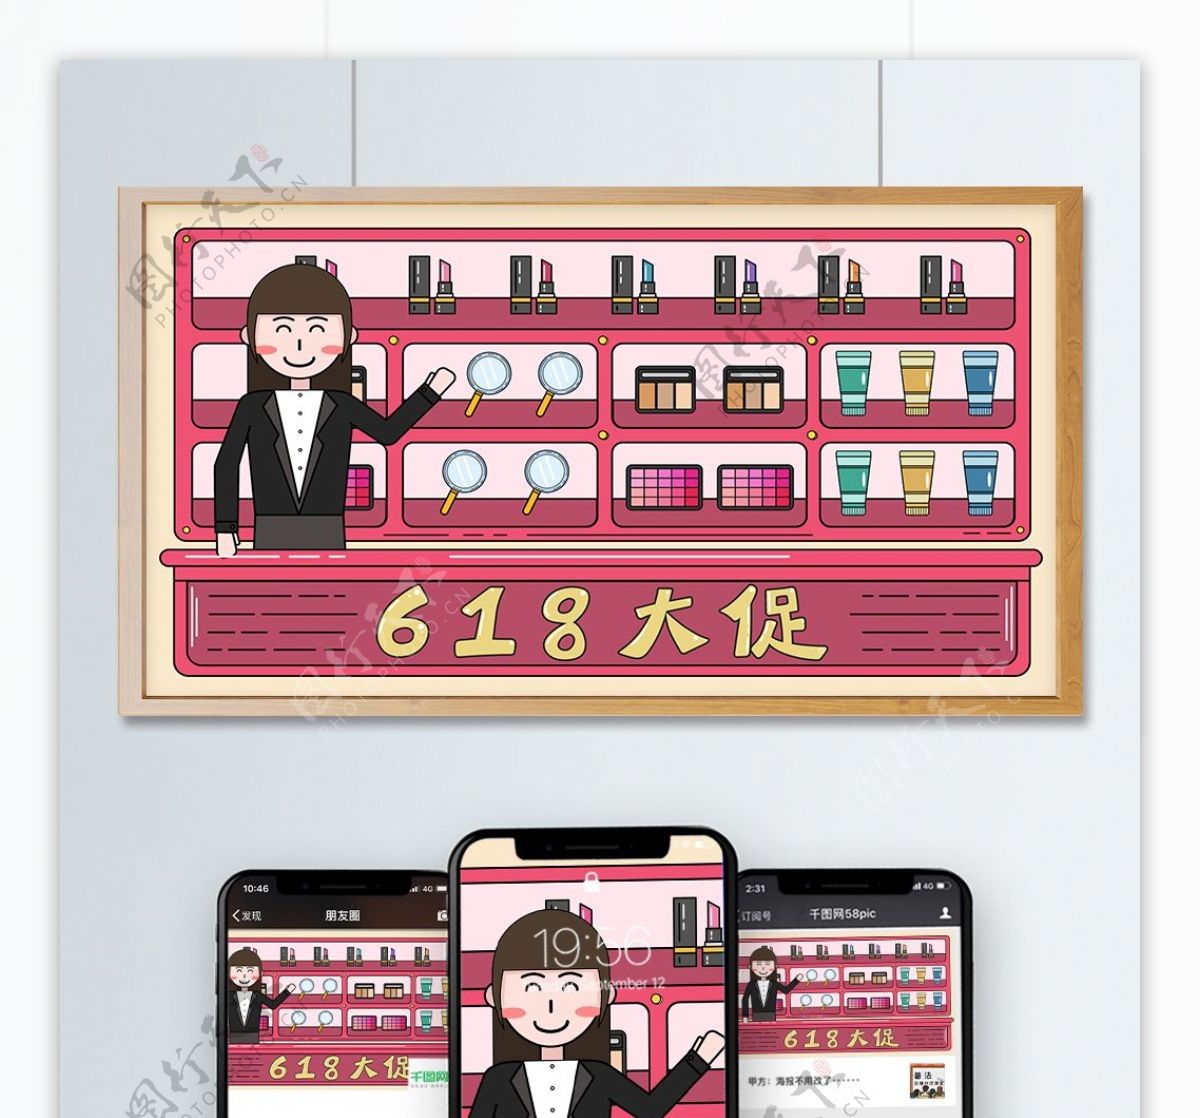 京东618电商季化妆品促销矢量描边插画